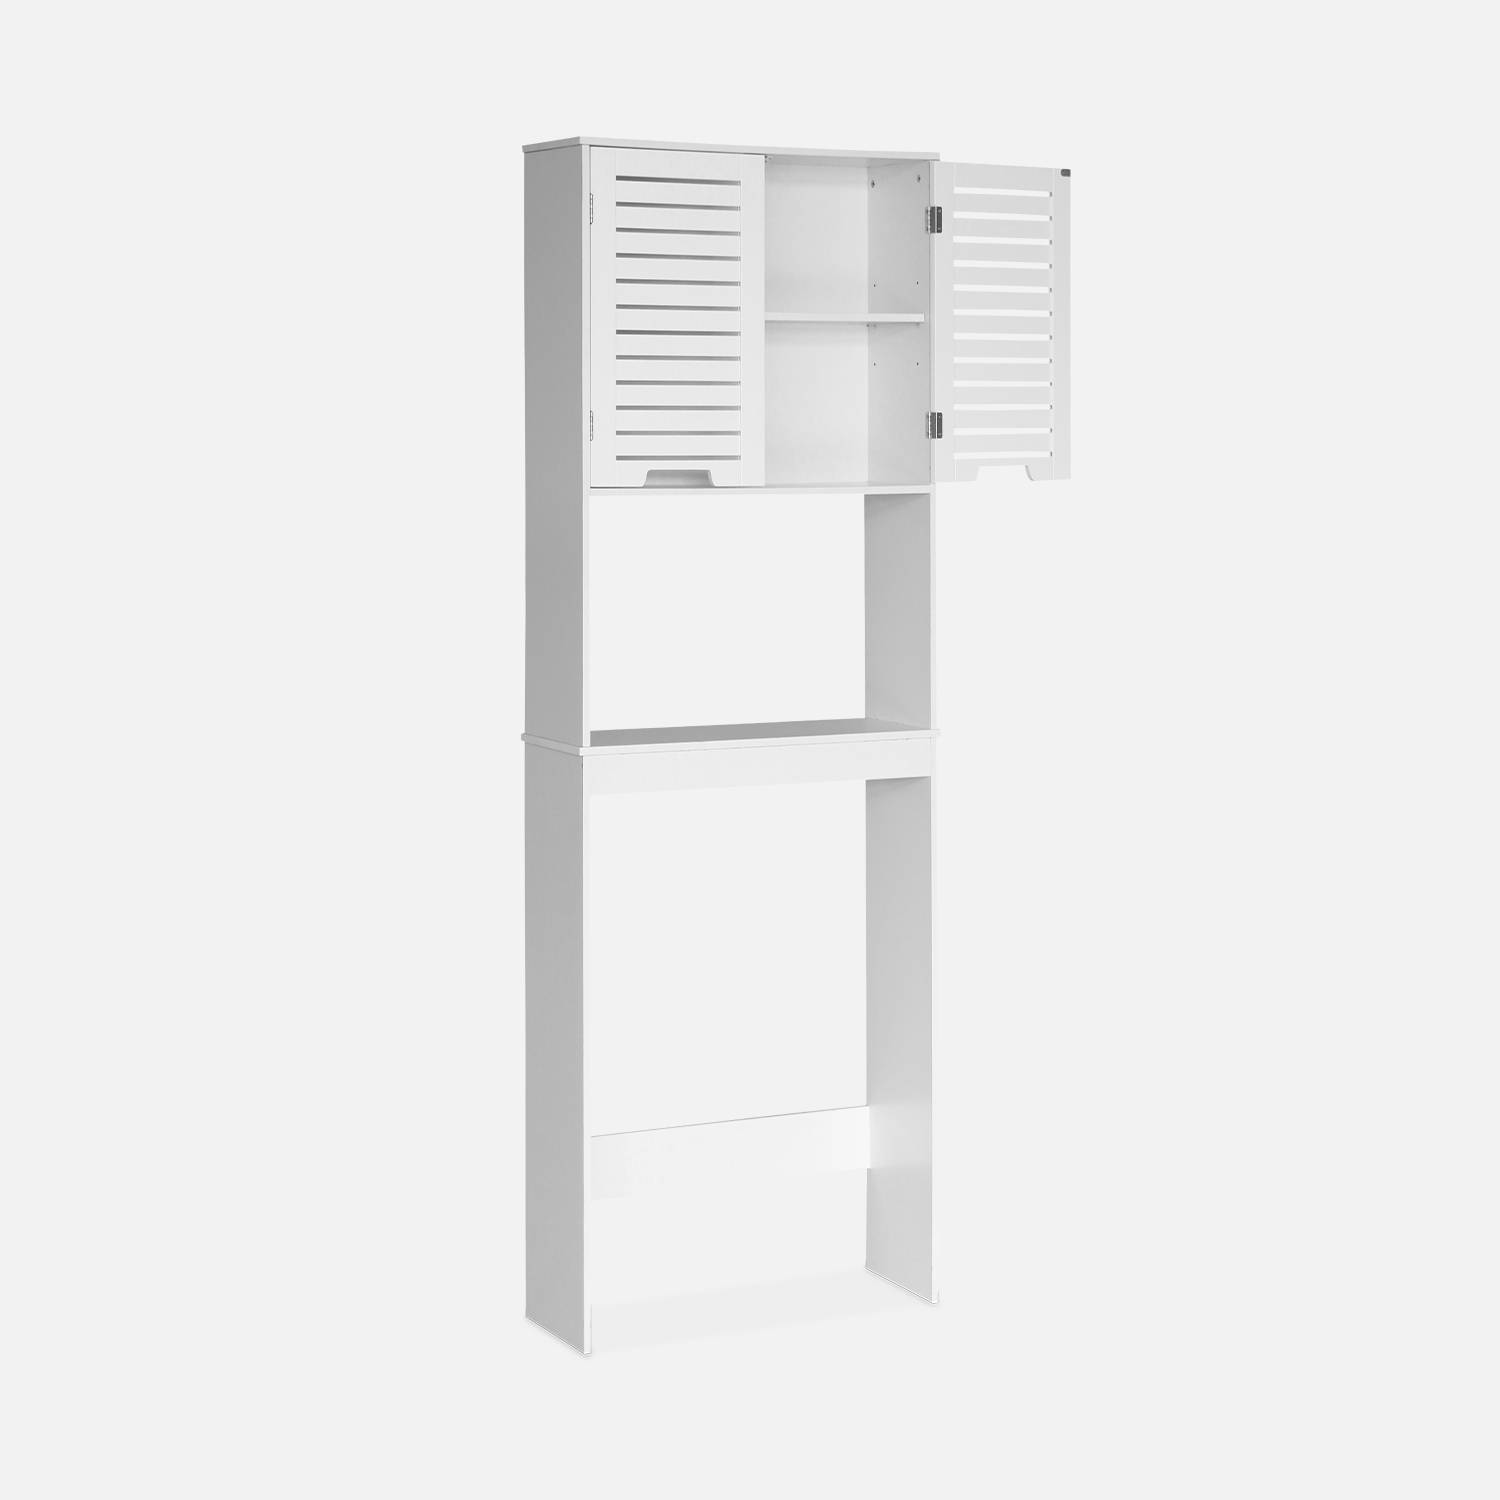 WC shelf/cabinet, bathroom furniture, white,sweeek,Photo2